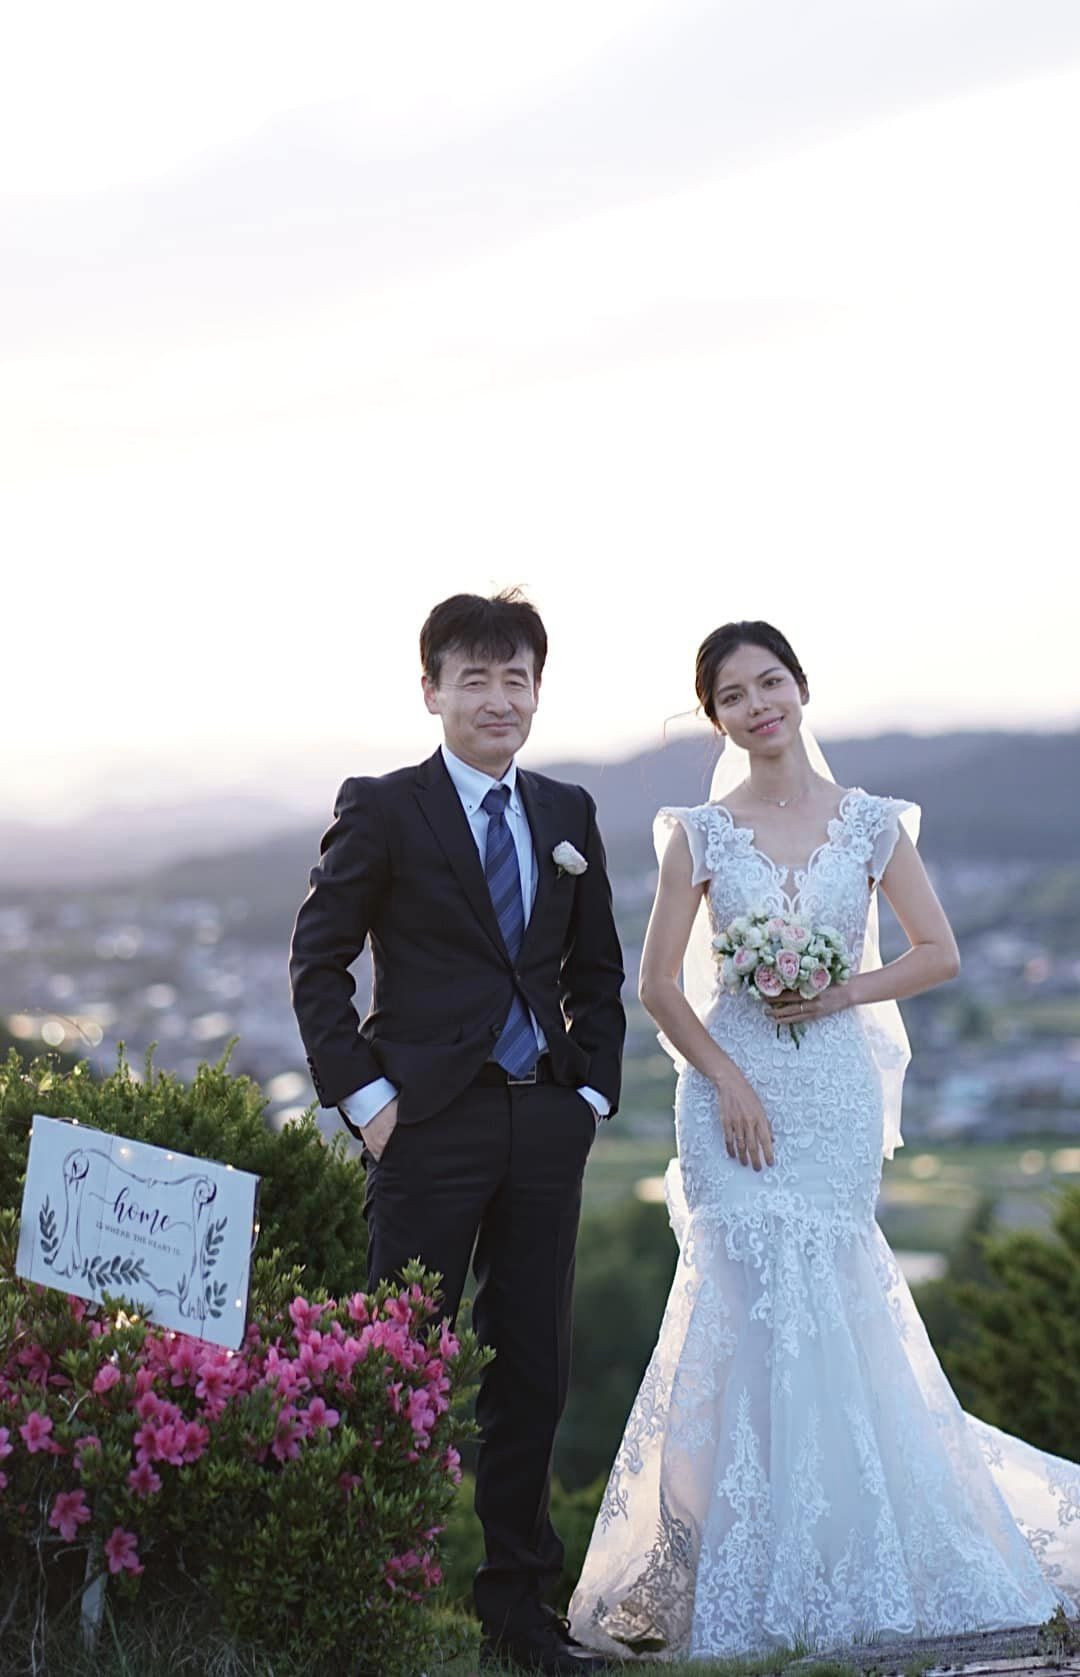 Chồng Nhật ngại tạo dáng, vợ Việt chờ 5 năm chụp ảnh cưới tuyệt đẹp 0 đồng - Ảnh 11.